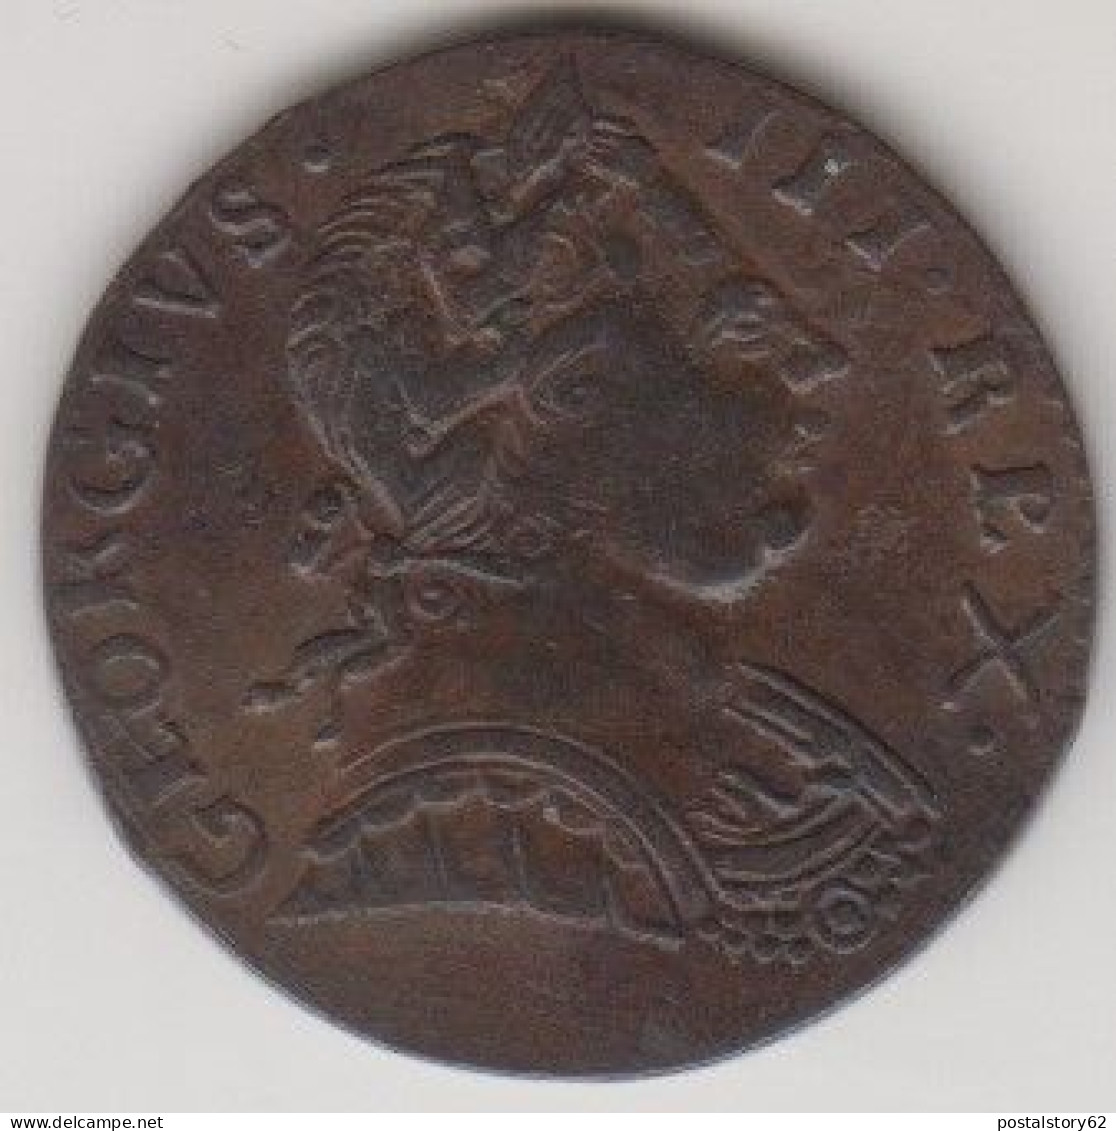 George III° - Half Penny 1773 - B. 1/2 Penny